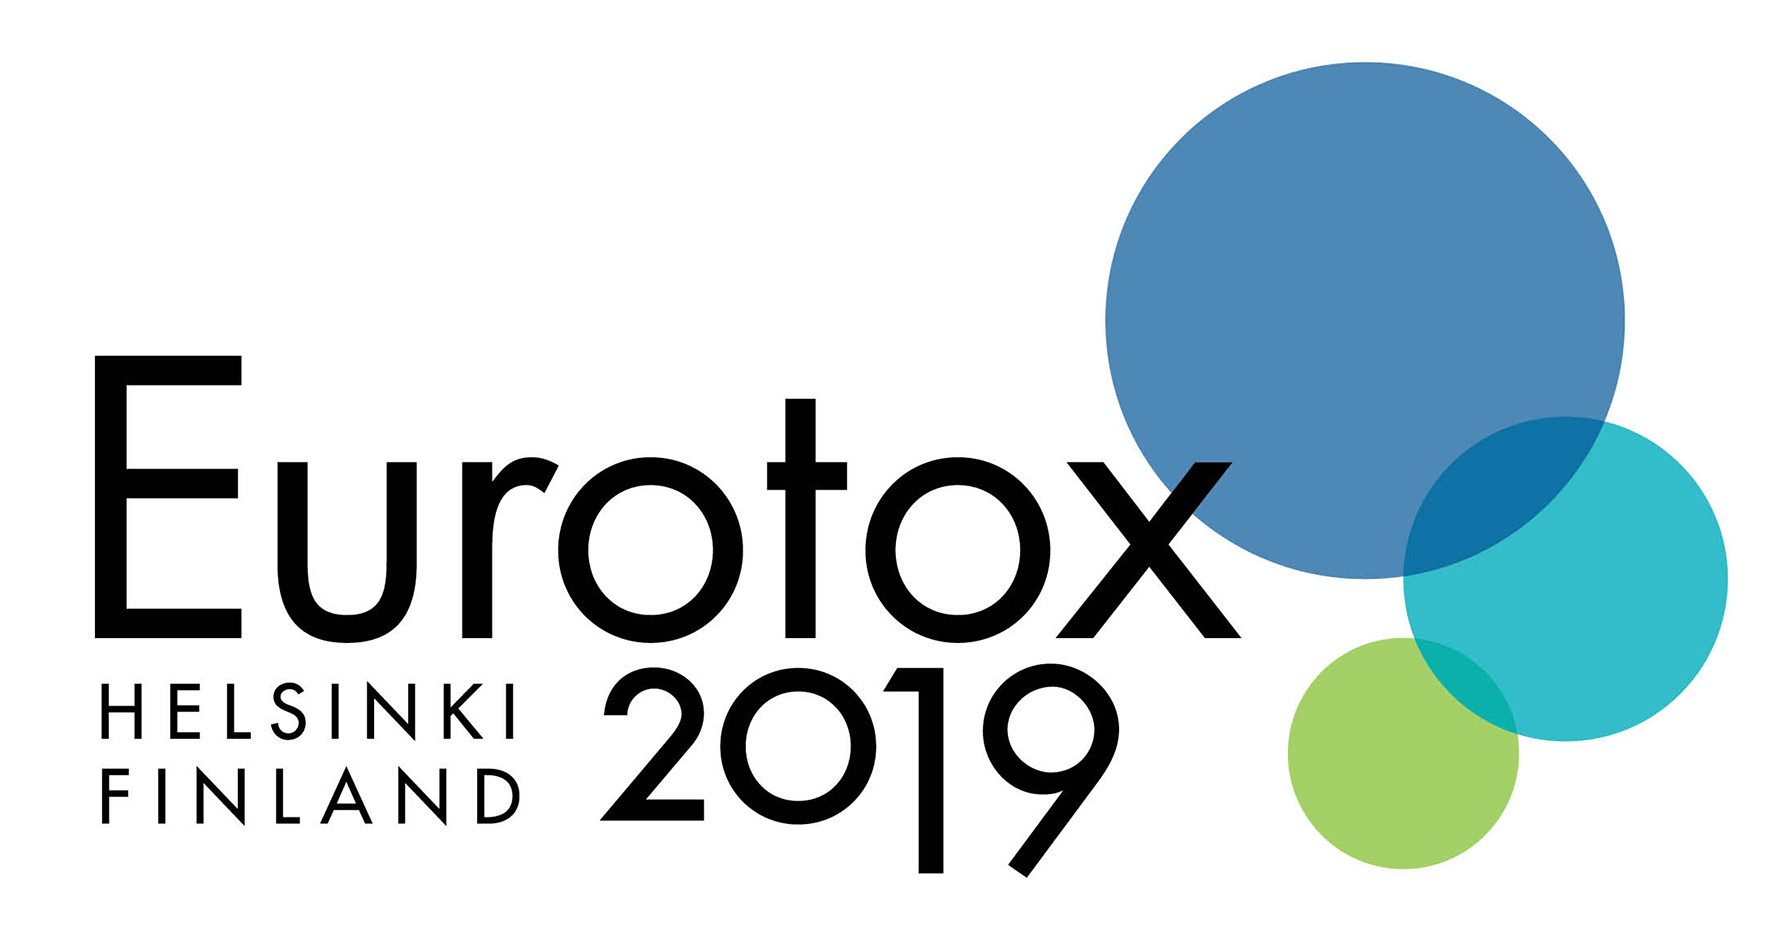 See you at EUROTOX 2019